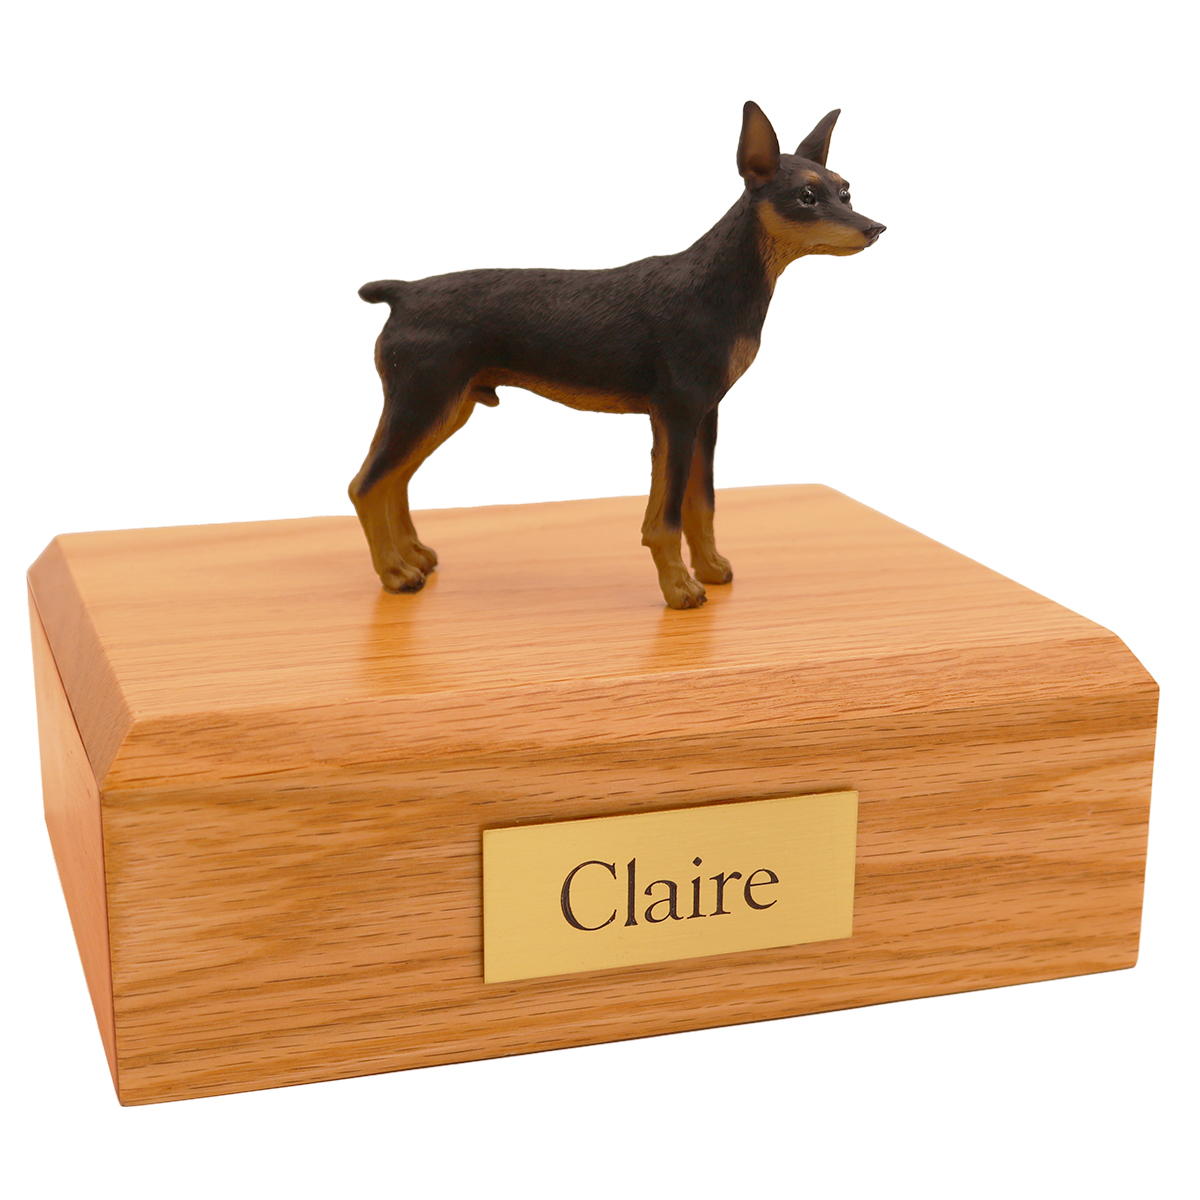 Dog, Miniature Pincher, Black/Tan - Figurine Urn